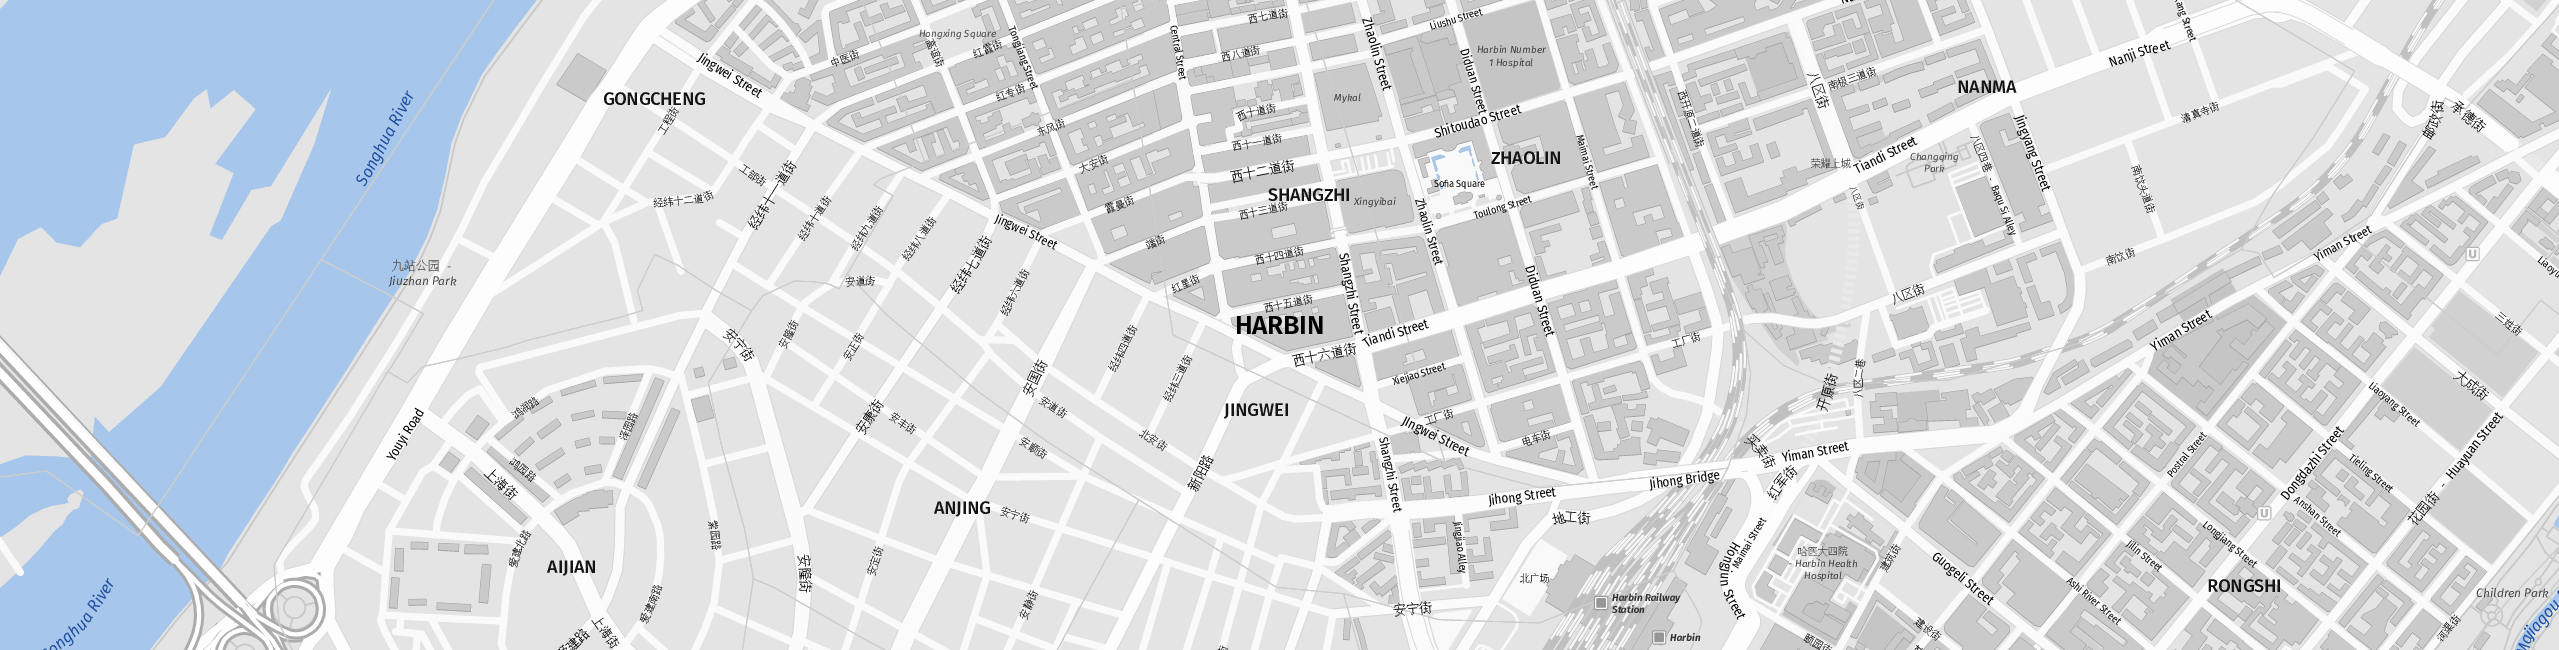 Stadtplan Harbin zum Downloaden.